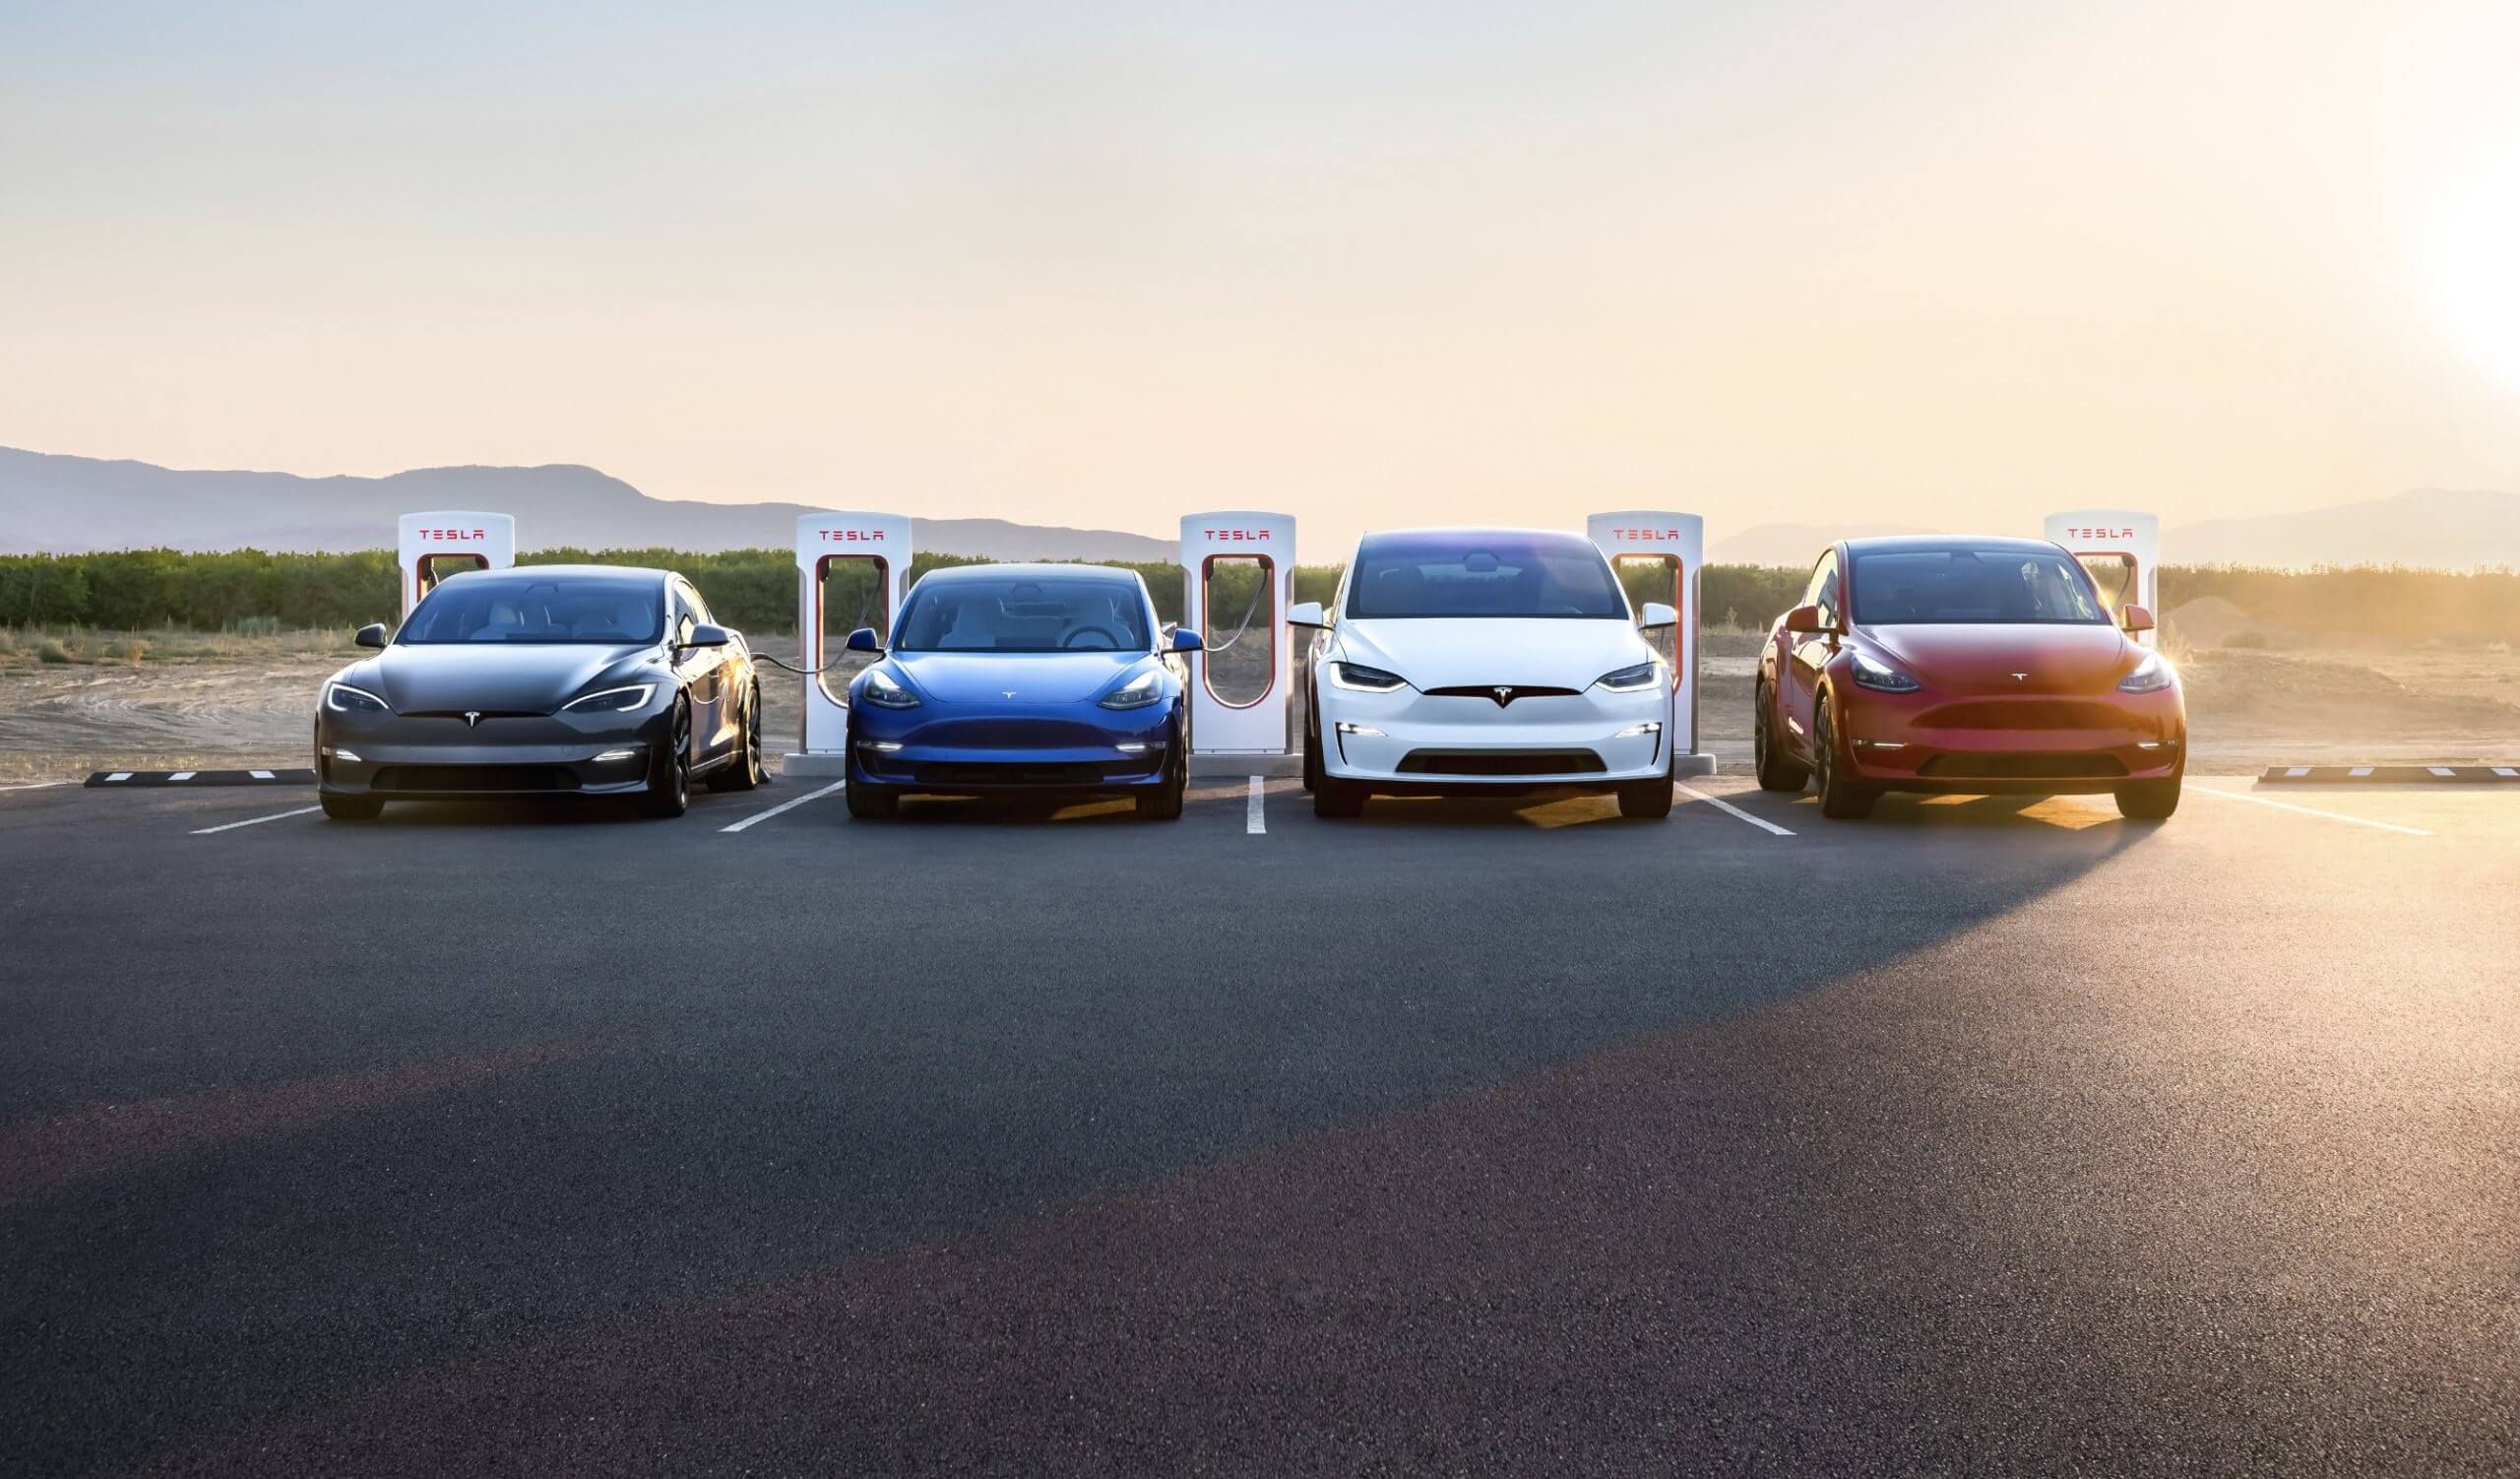 Posibles fechas de lanzamiento de la flota de taxis robotizados de Tesla